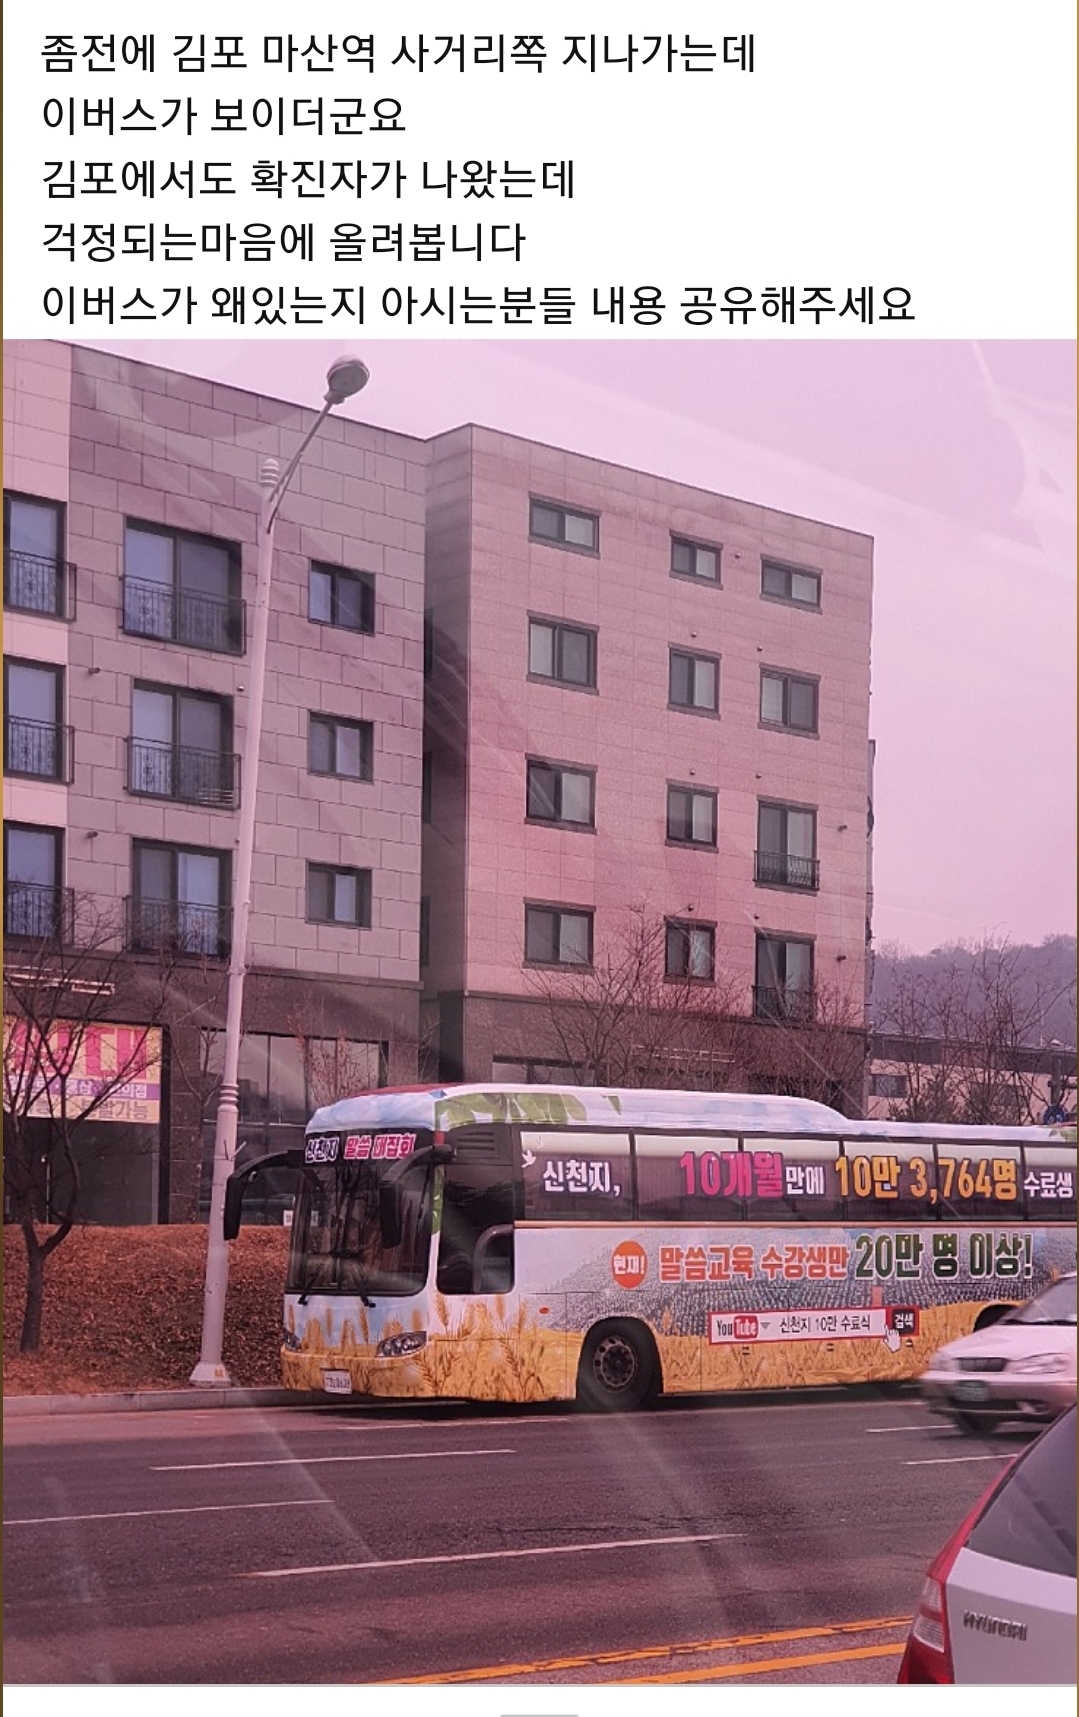 최근 31번 확진자가 대구 신천지교회 신자로 확인된 가운데 21일 김포시 마산역 사거리에 신천지교회 버스가 정차돼 있다.